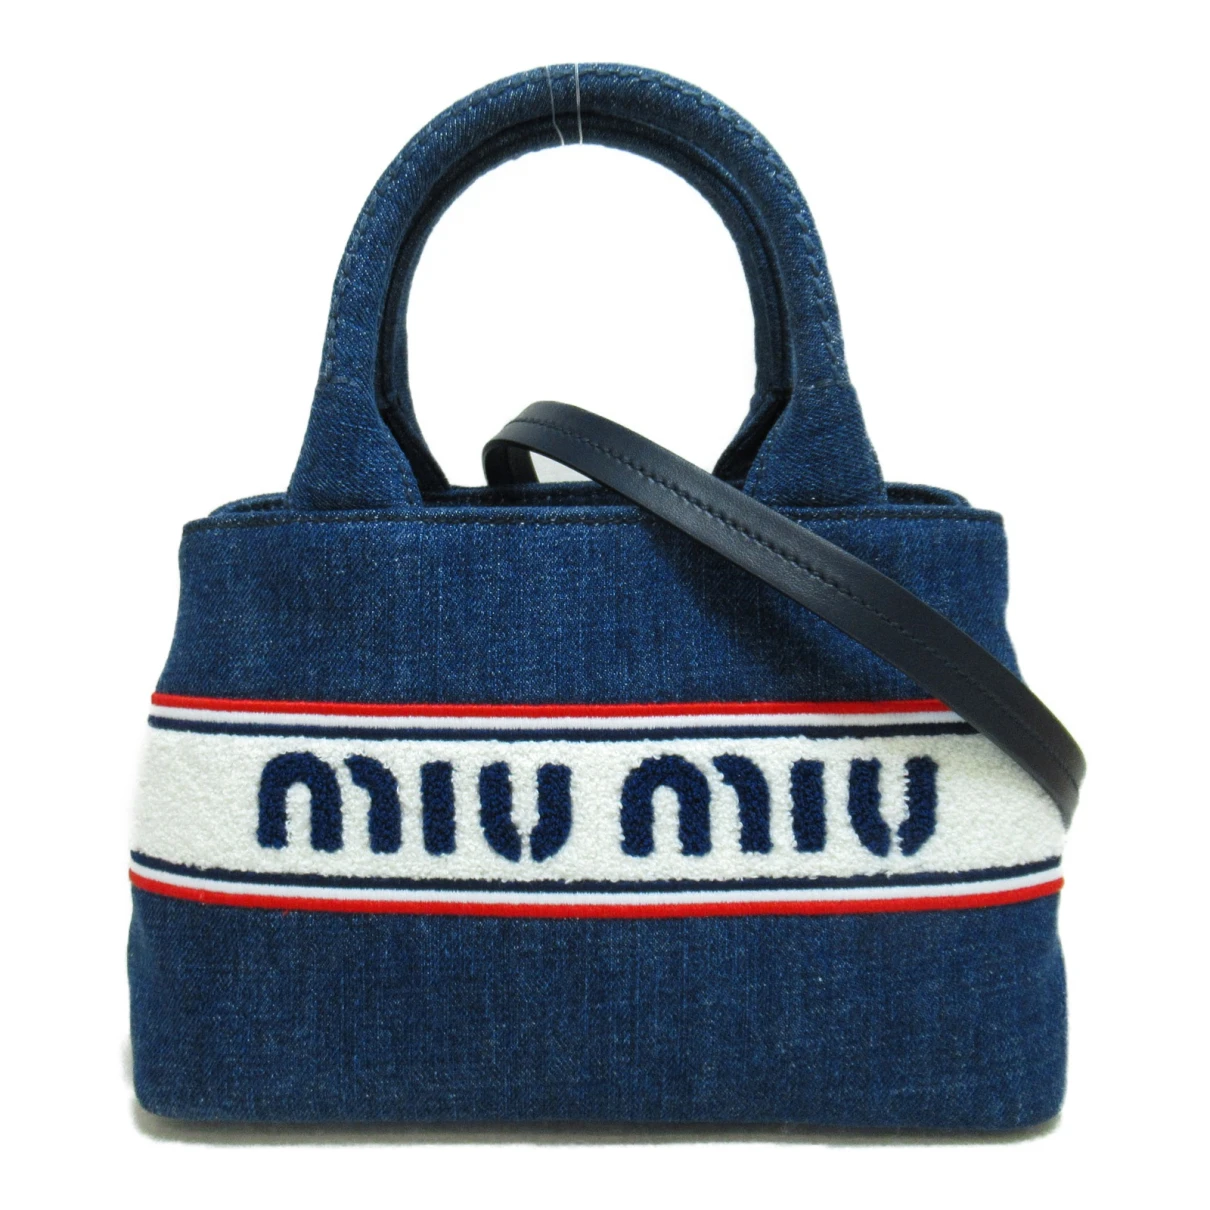 Pre-owned Miu Miu Handbag In Navy